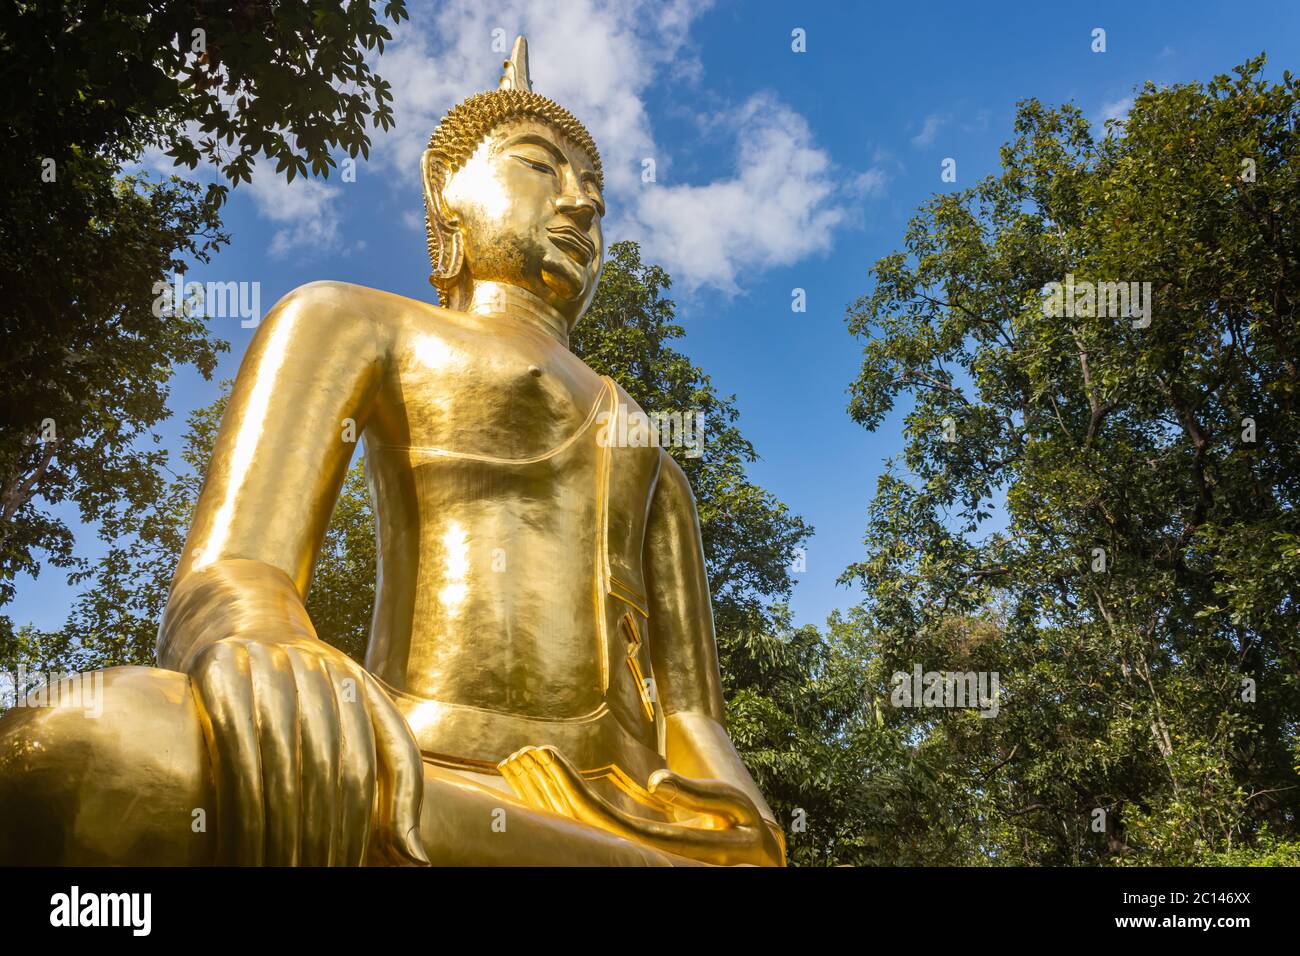 Phayao, Thailand - 24. Nov 2019: Goldene Buddha Statue auf grünem Baum und blauem Himmel Hintergrund mit natürlichem Licht am linken Rahmen Stockfoto